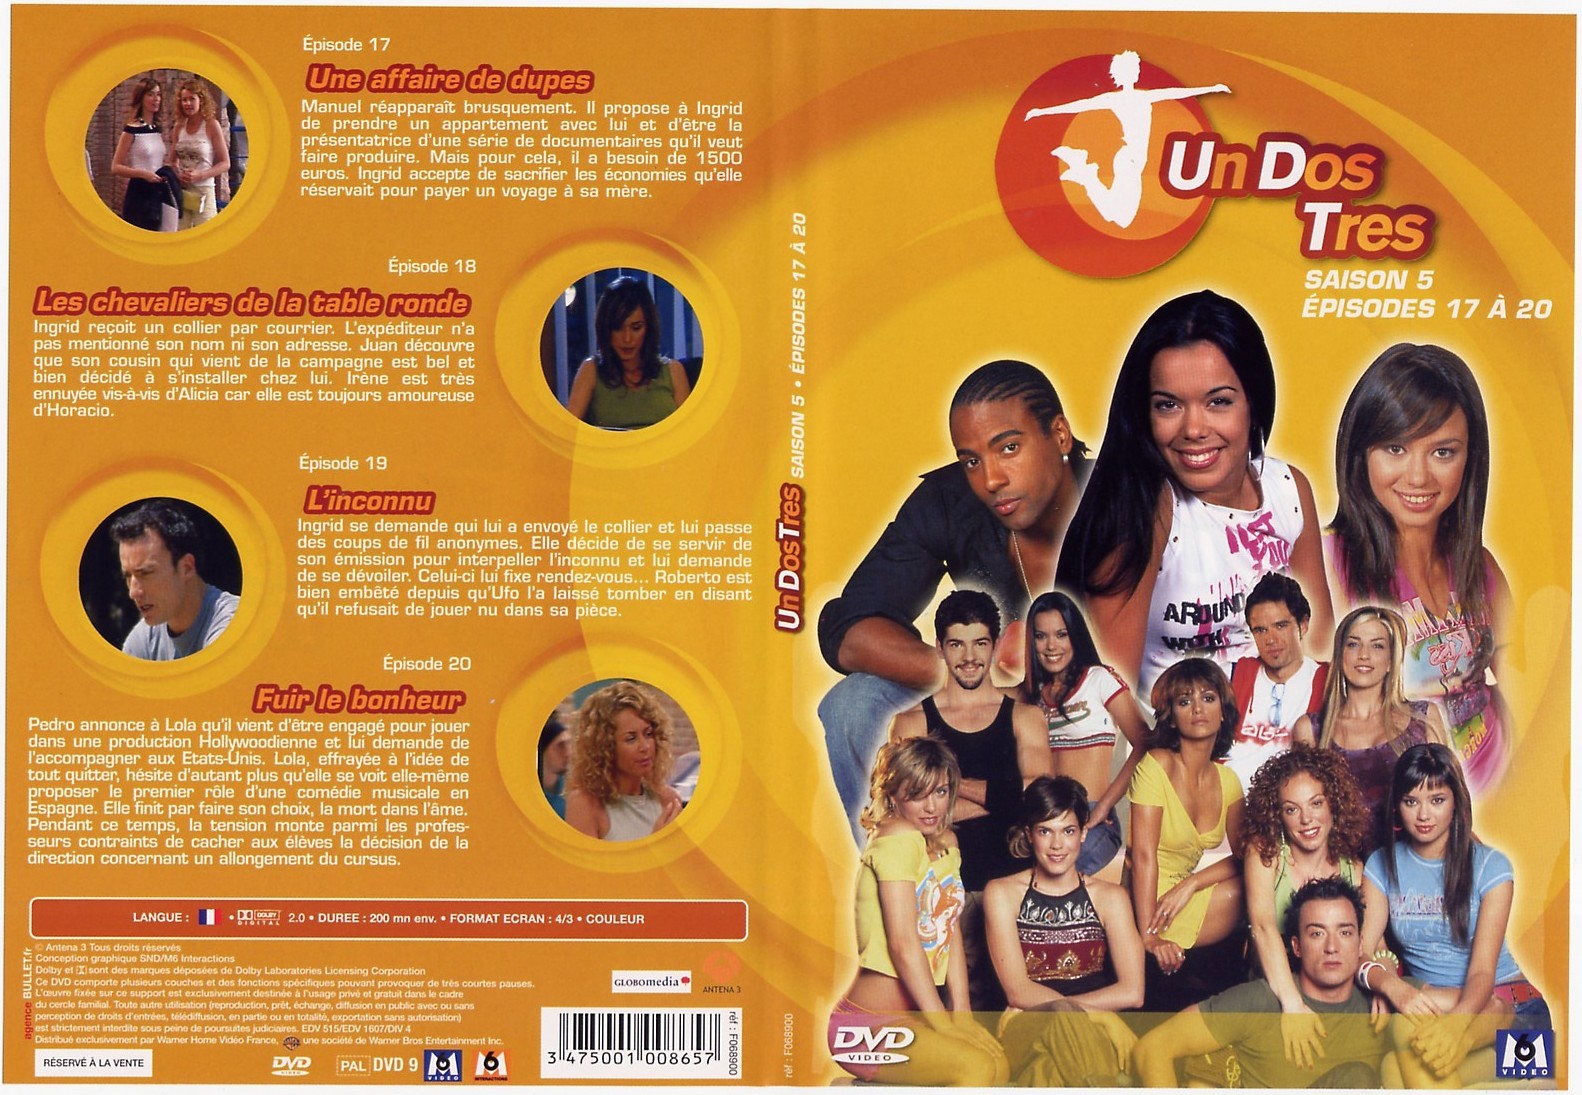 Jaquette DVD Un Dos Tres saison 5 Episodes 17  20